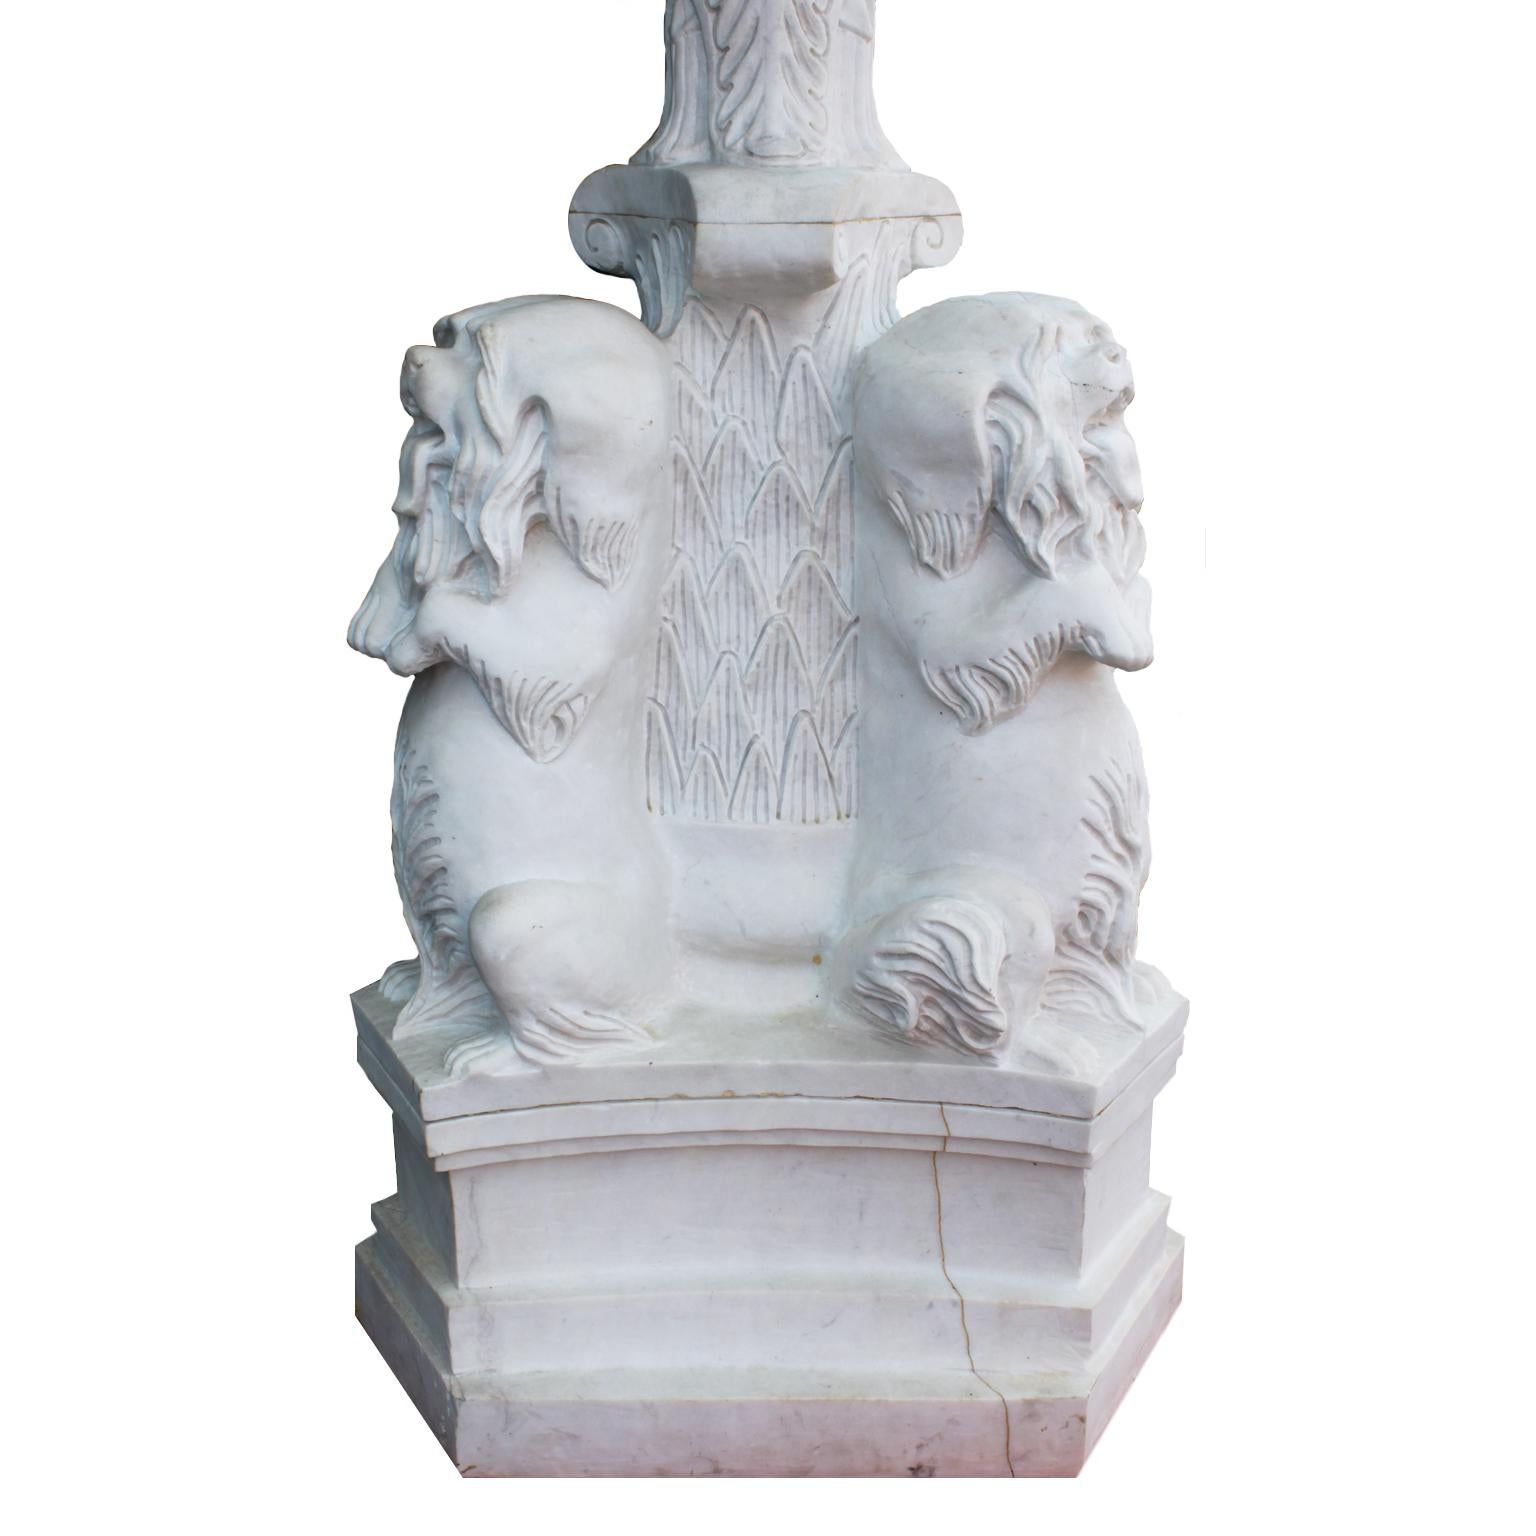 Whitingical English 19th-20th century white marble figural fountain with dogs fountain. La base en marbre tripode à six côtés de style néo-baroque est surmontée de trois Yorkshire Terriers assis debout reposant sur une tige centrale à feuilles et